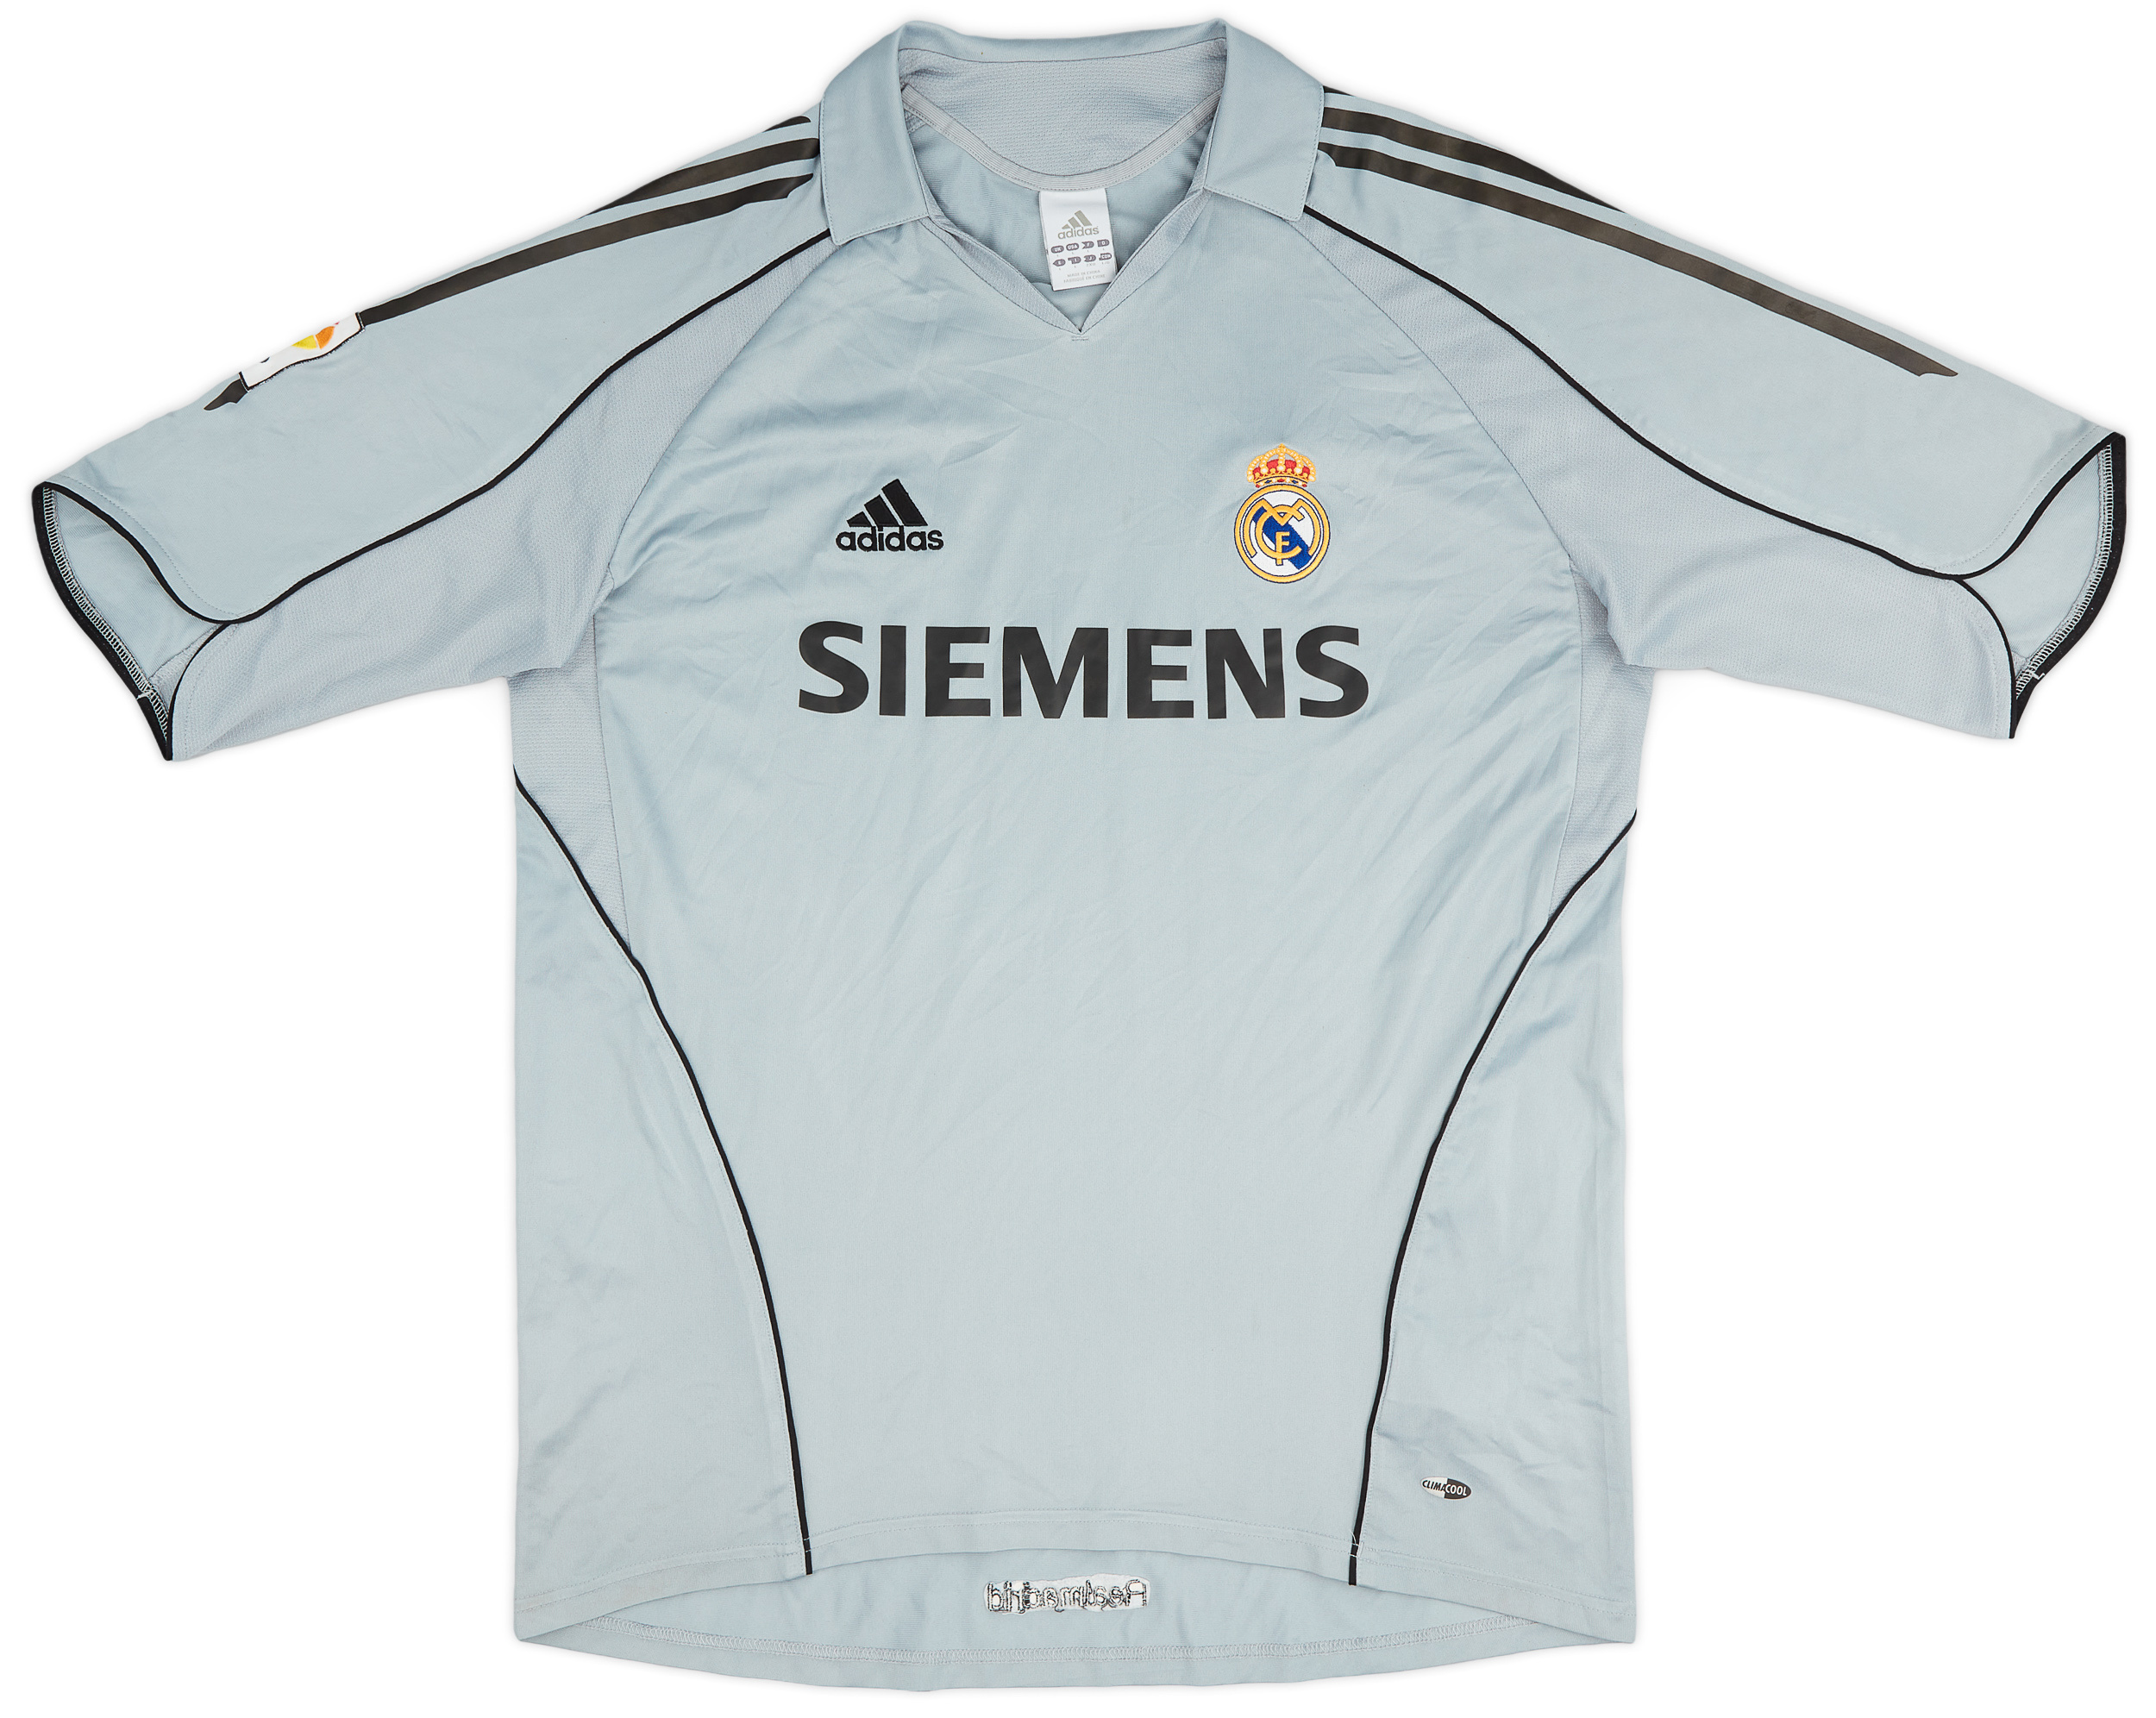 2005-06 Real Madrid Third Shirt - 9/10 - ()